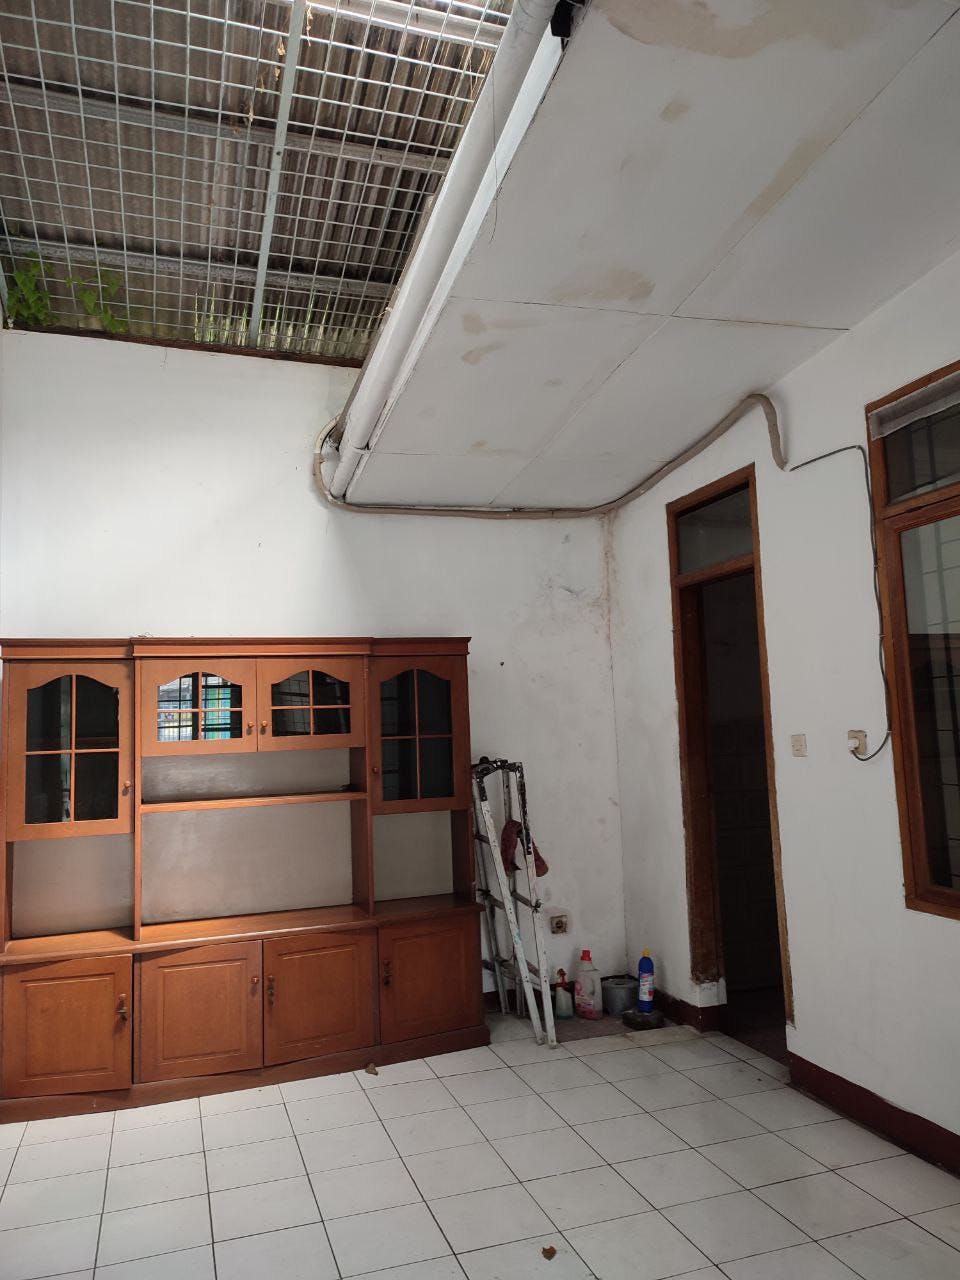 Rumah 1 Lantai Siap Huni Taman Kopo Indah TKI 2, Bandung